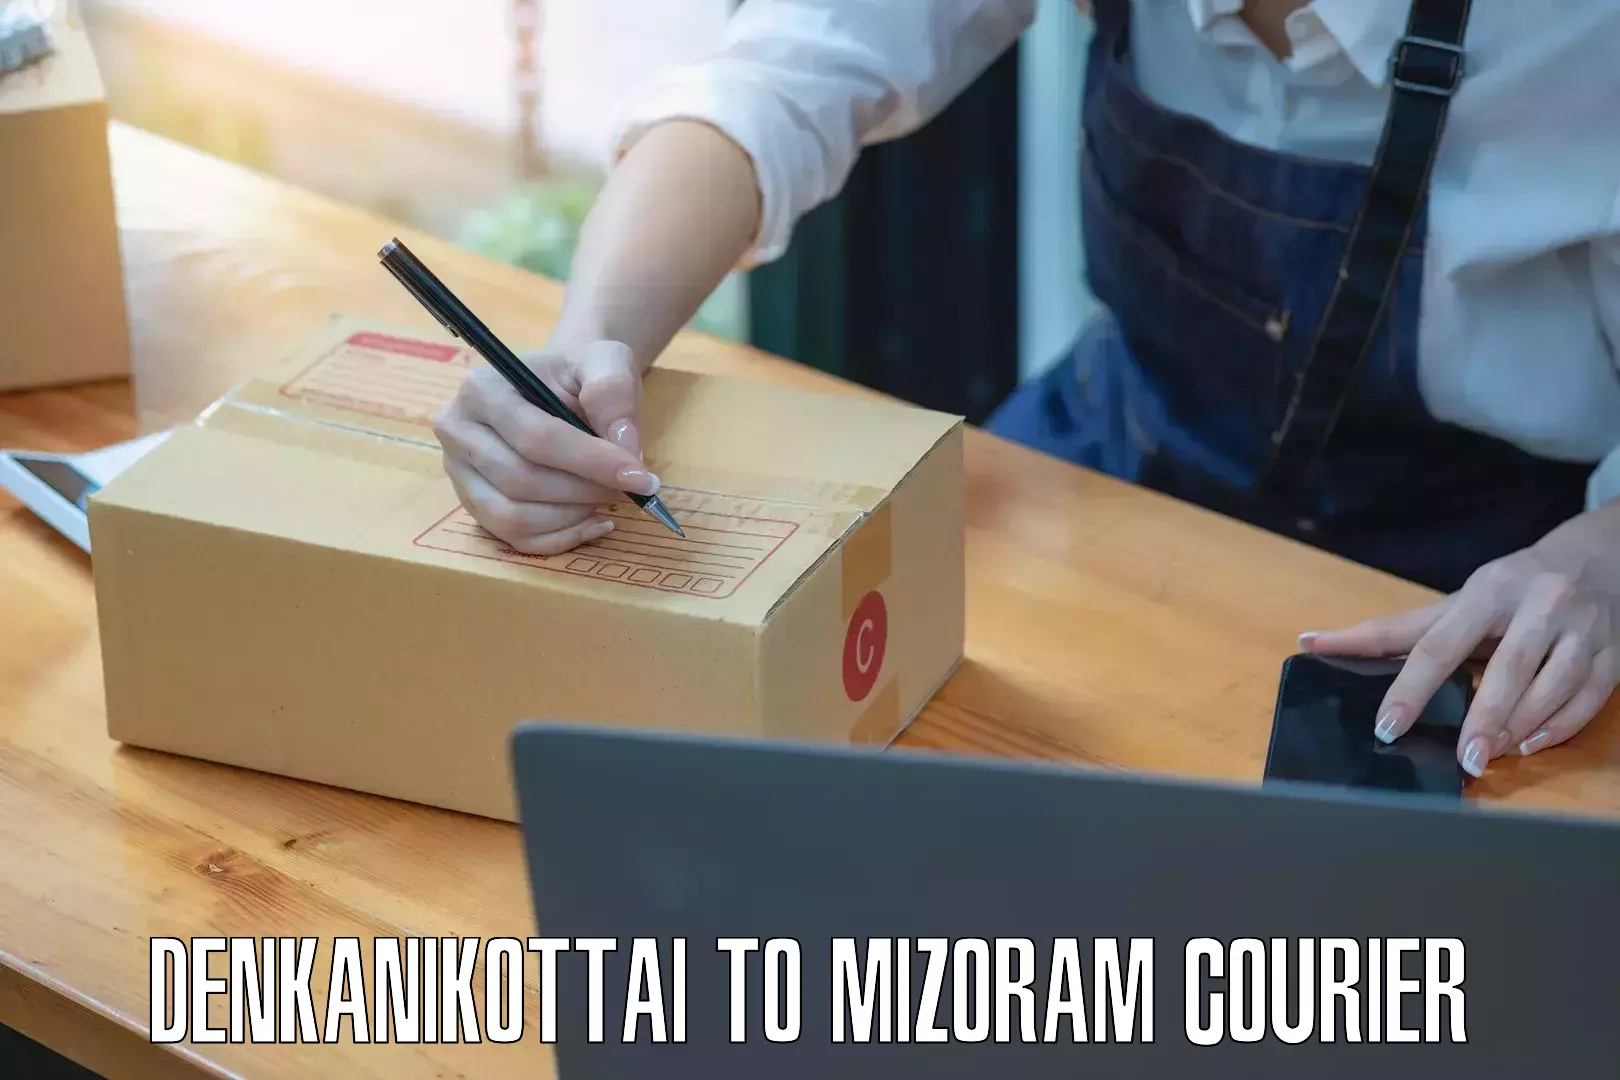 Small business couriers Denkanikottai to NIT Aizawl